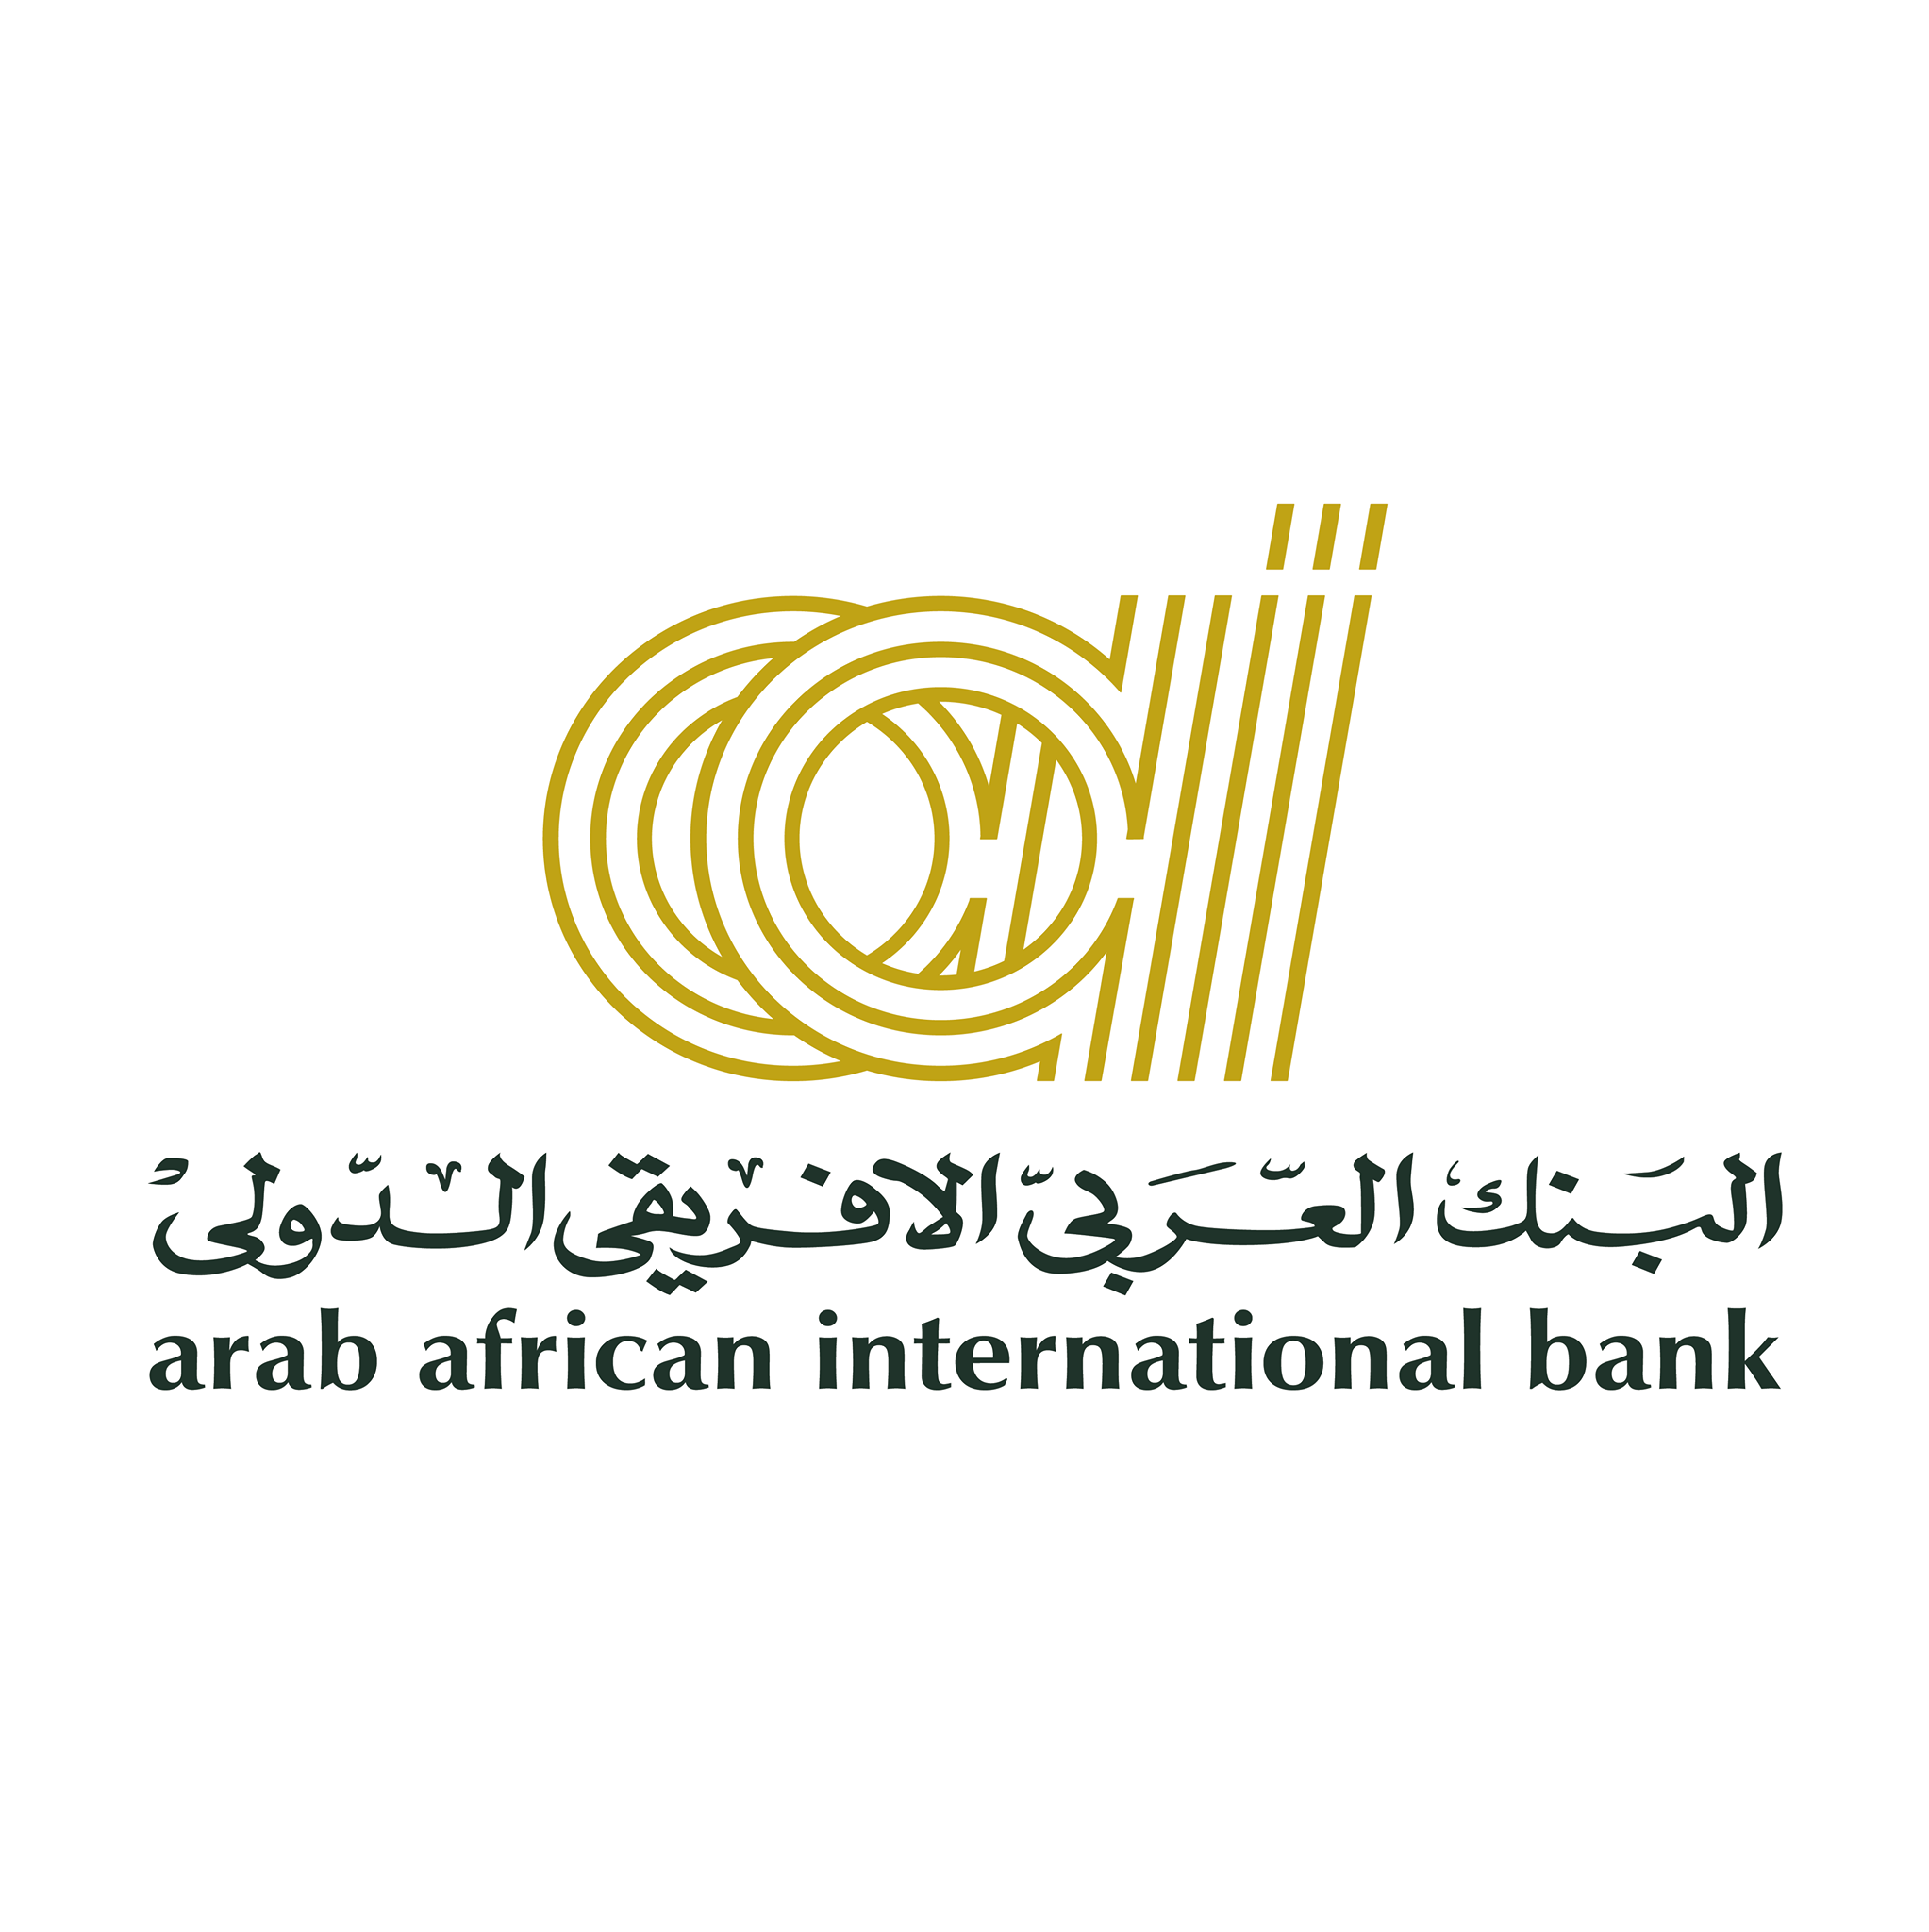 القرض الشخصي من البنك العربي الأفريقي الدولي (التفاصيل والشروط)